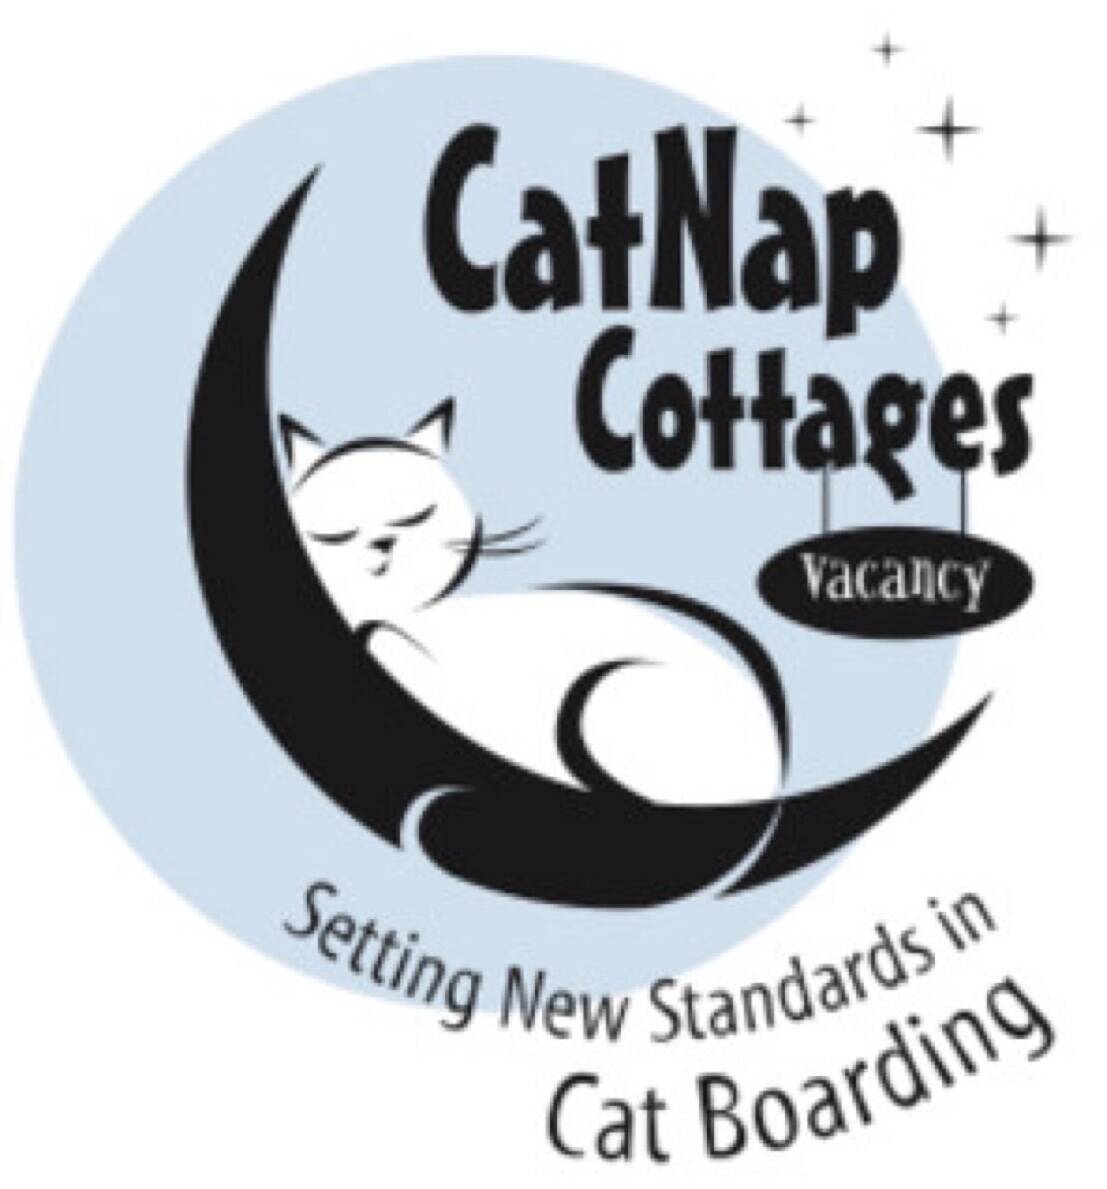 CatNap Cottages Inc.